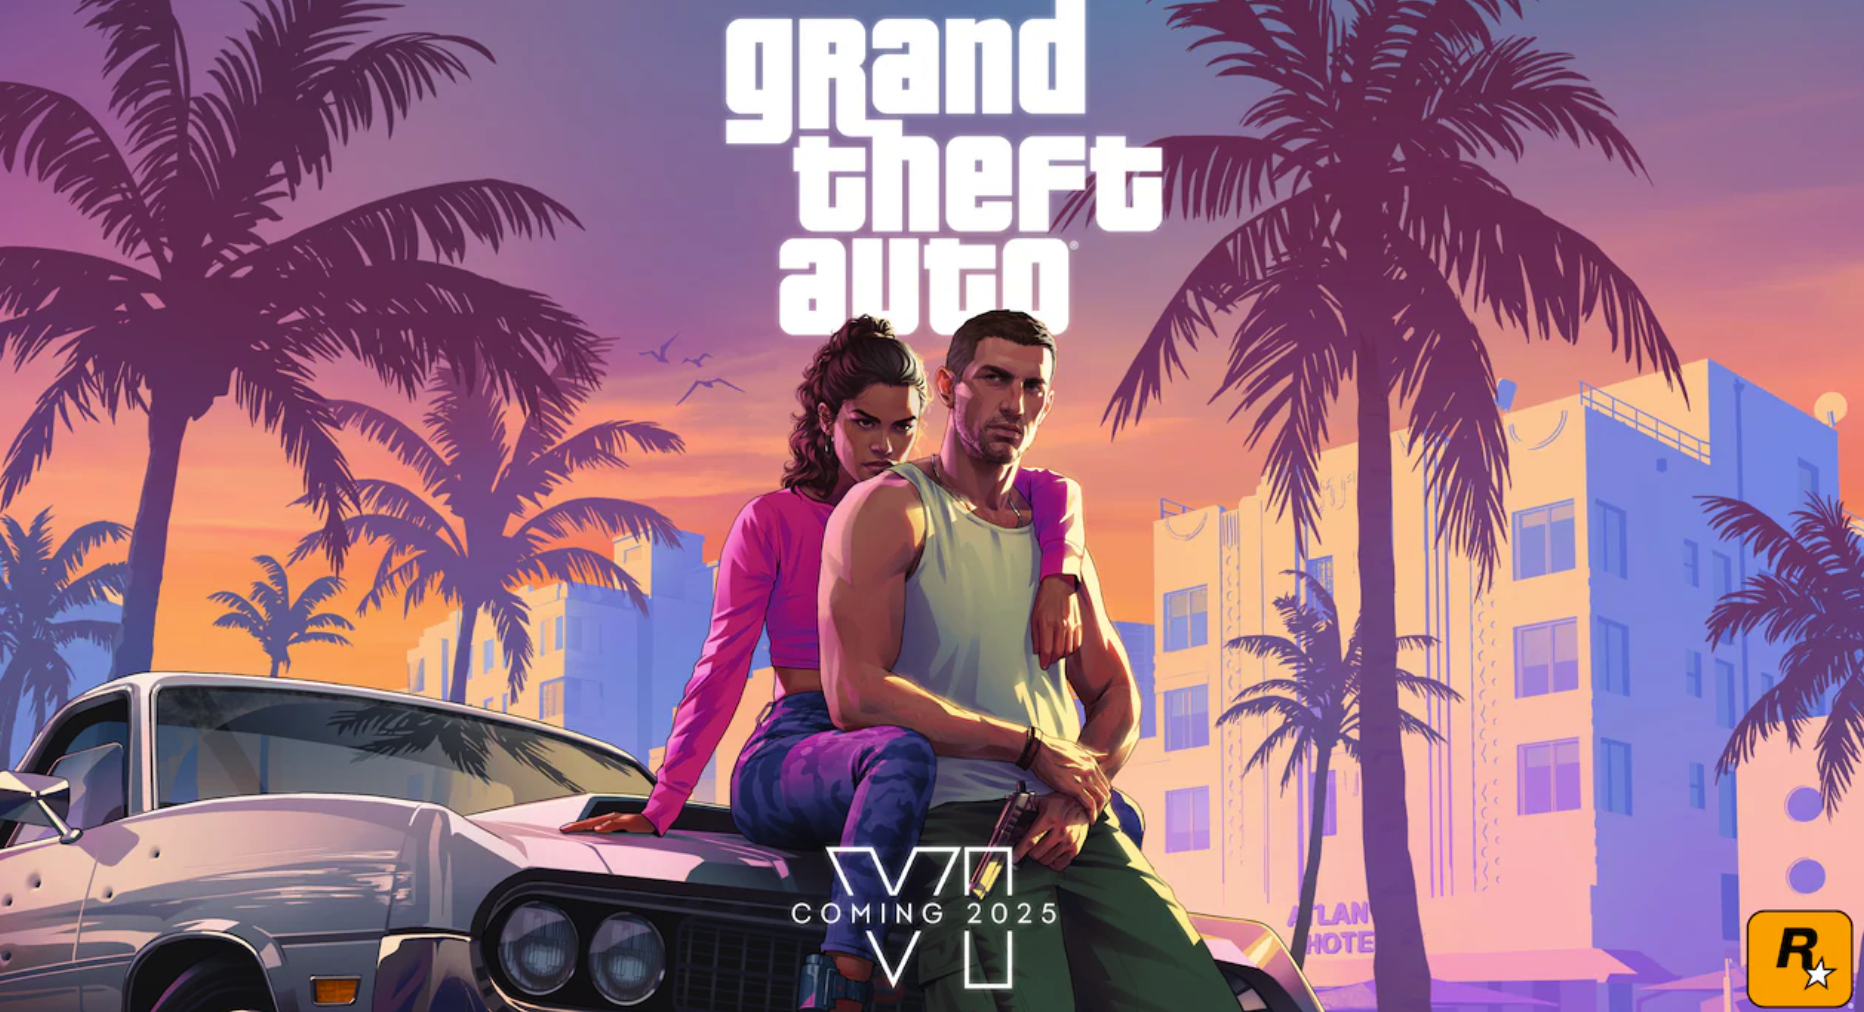 GTA VI - Grand Theft Auto VI